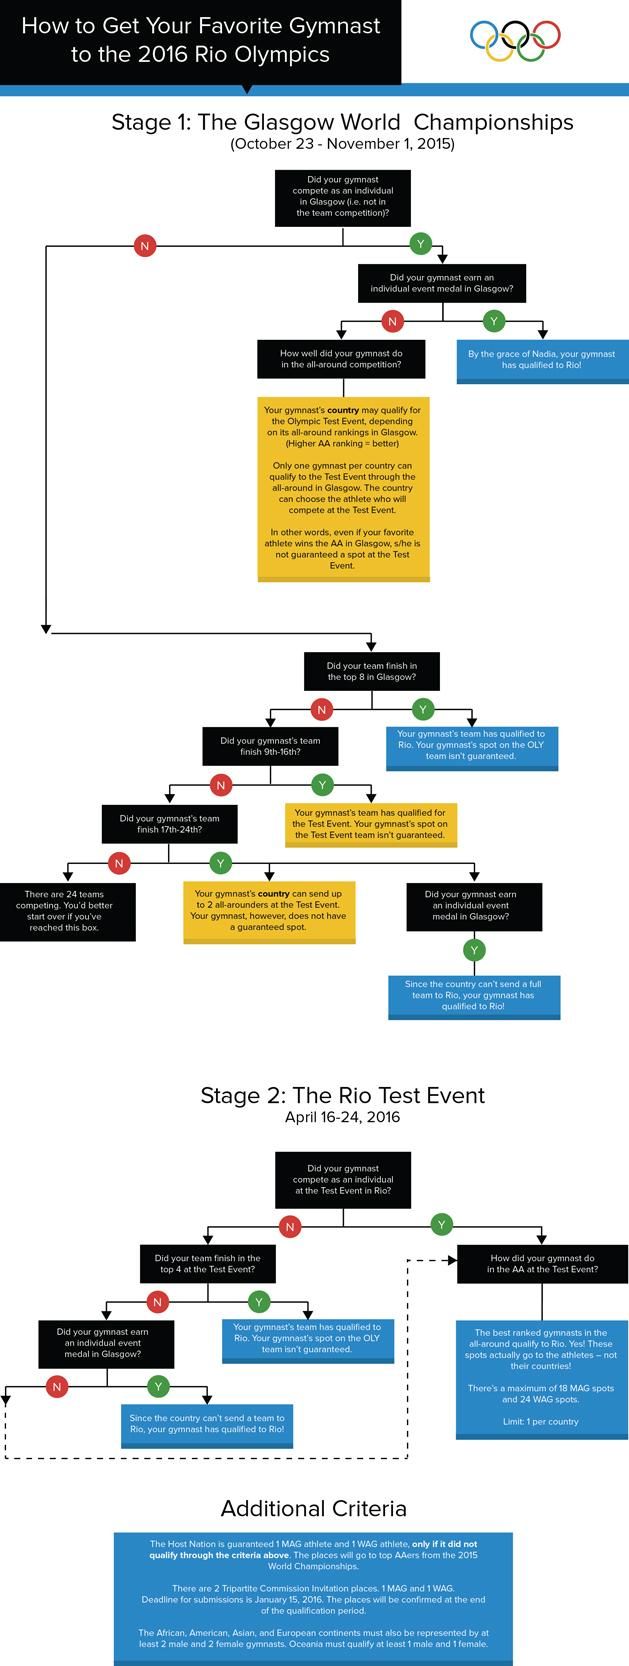 A riói kvalifikációs rendszer egyszerűsített folyamatábrája (Forrás: gymcastic.com)